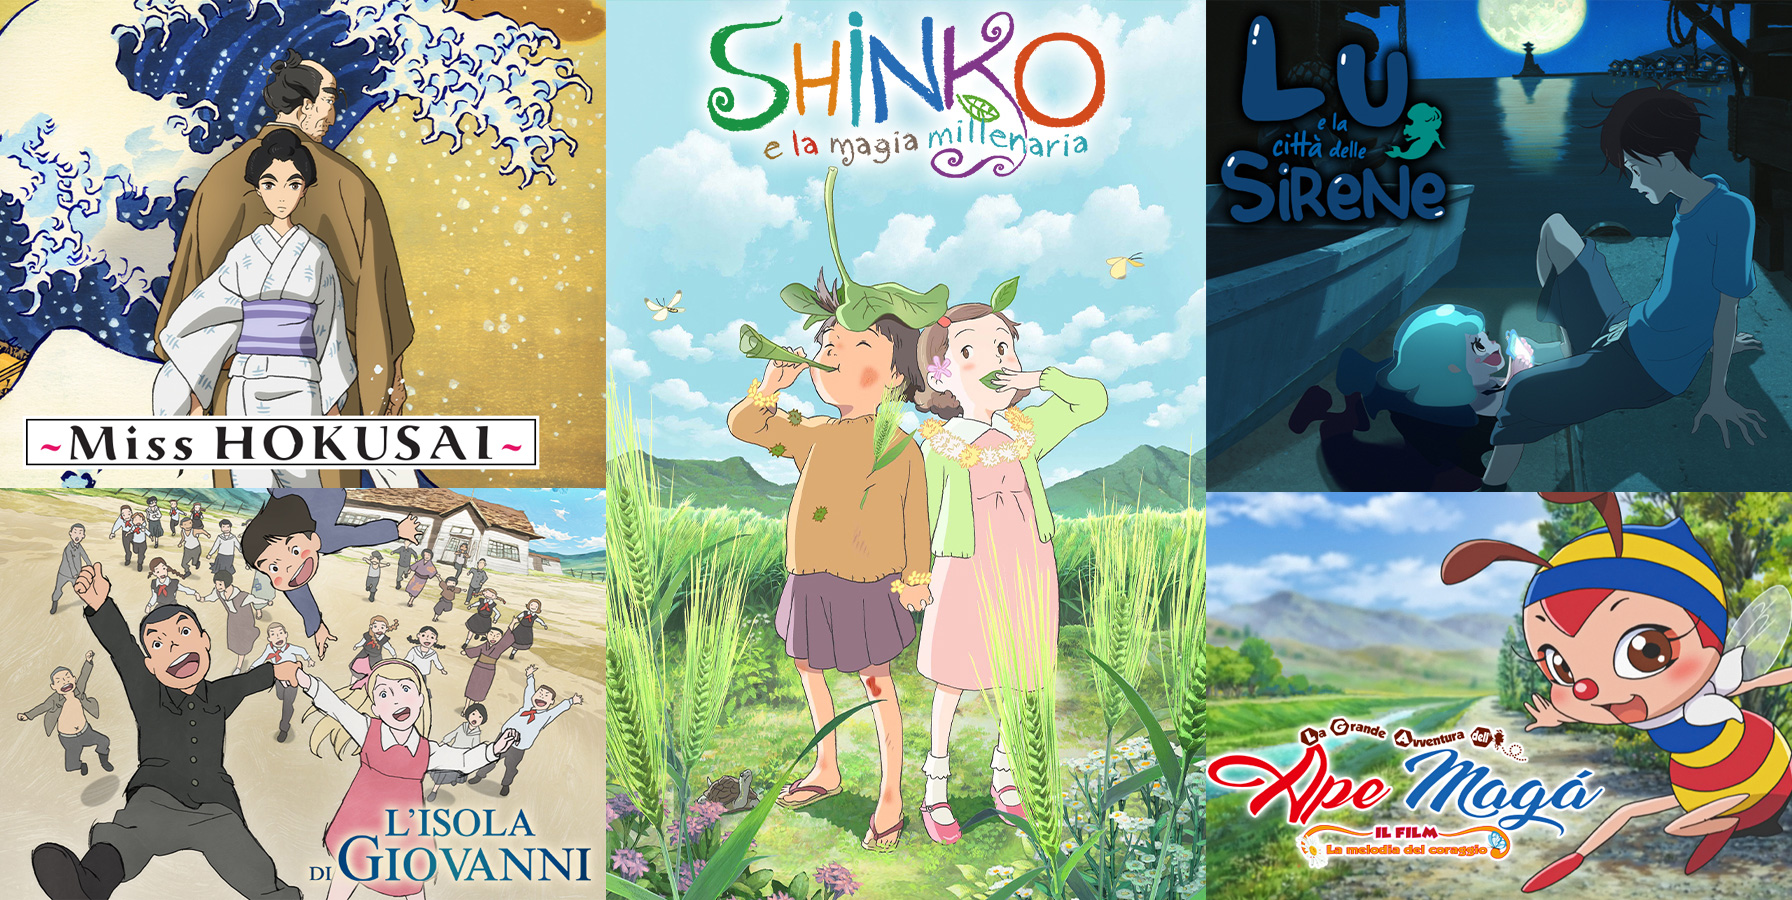 'Shinko e la magia millenaria', 'Miss Hokusai', 'L'isola di Giovanni', 'Lu e la città delle sirene' e 'La grande avventura dell'ape Magà'.